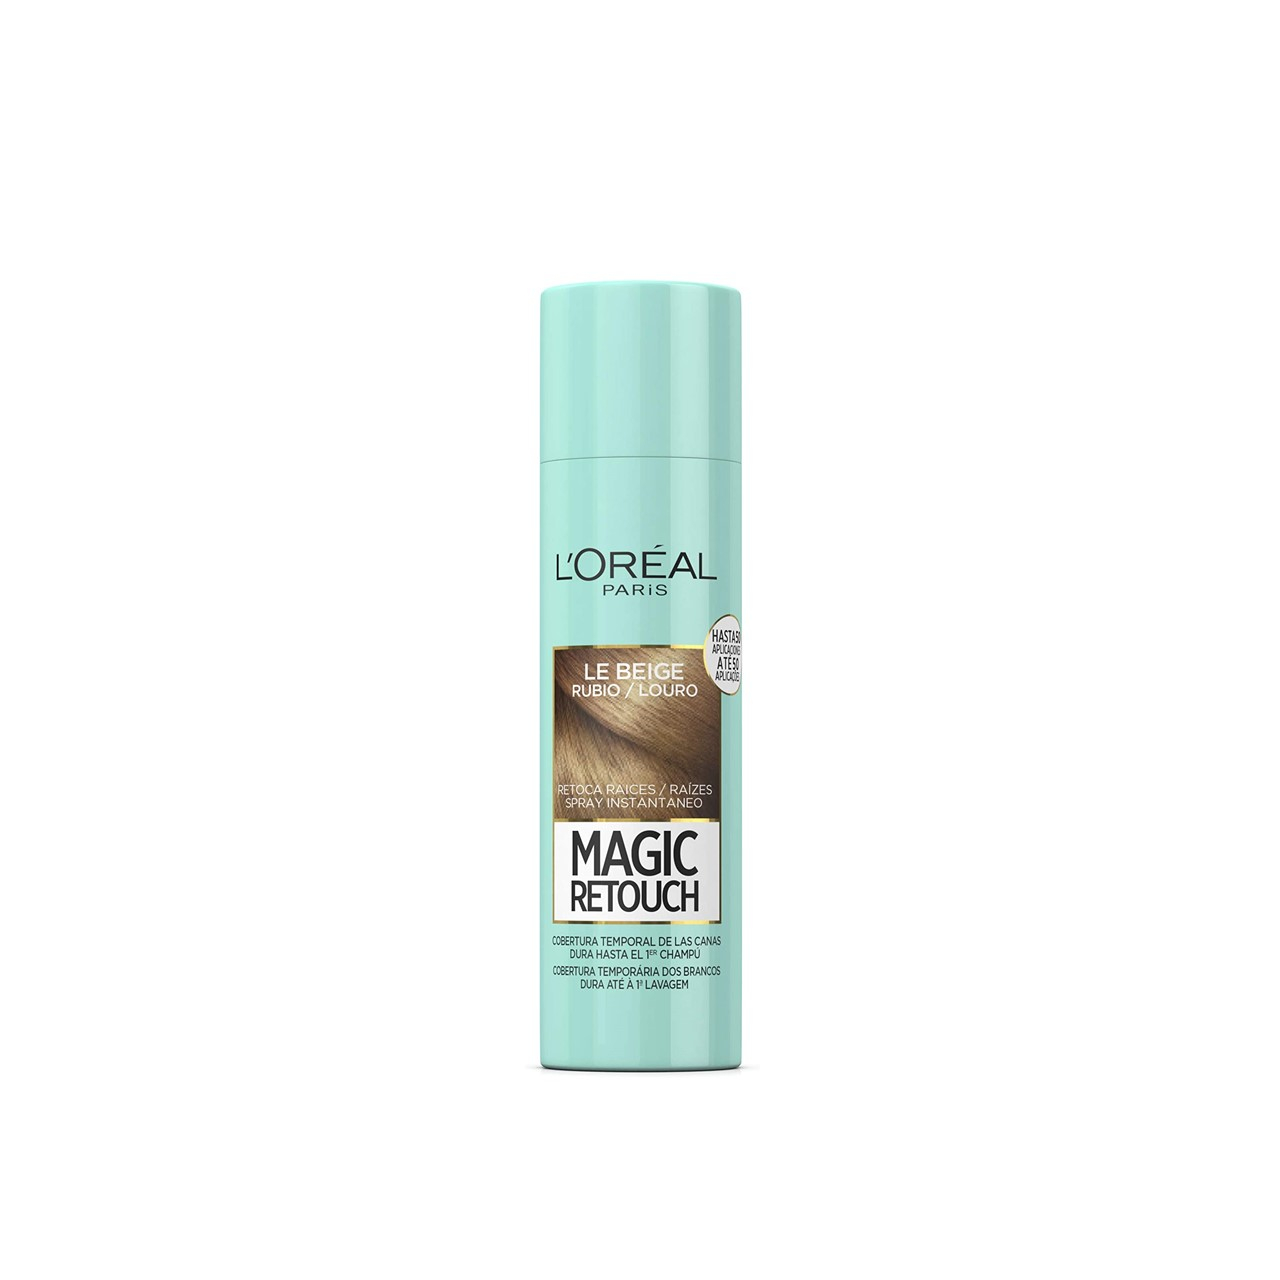 L'Oréal Paris Magic Retouch Blonde Root Touch Up XL 150ml (5.07fl oz)